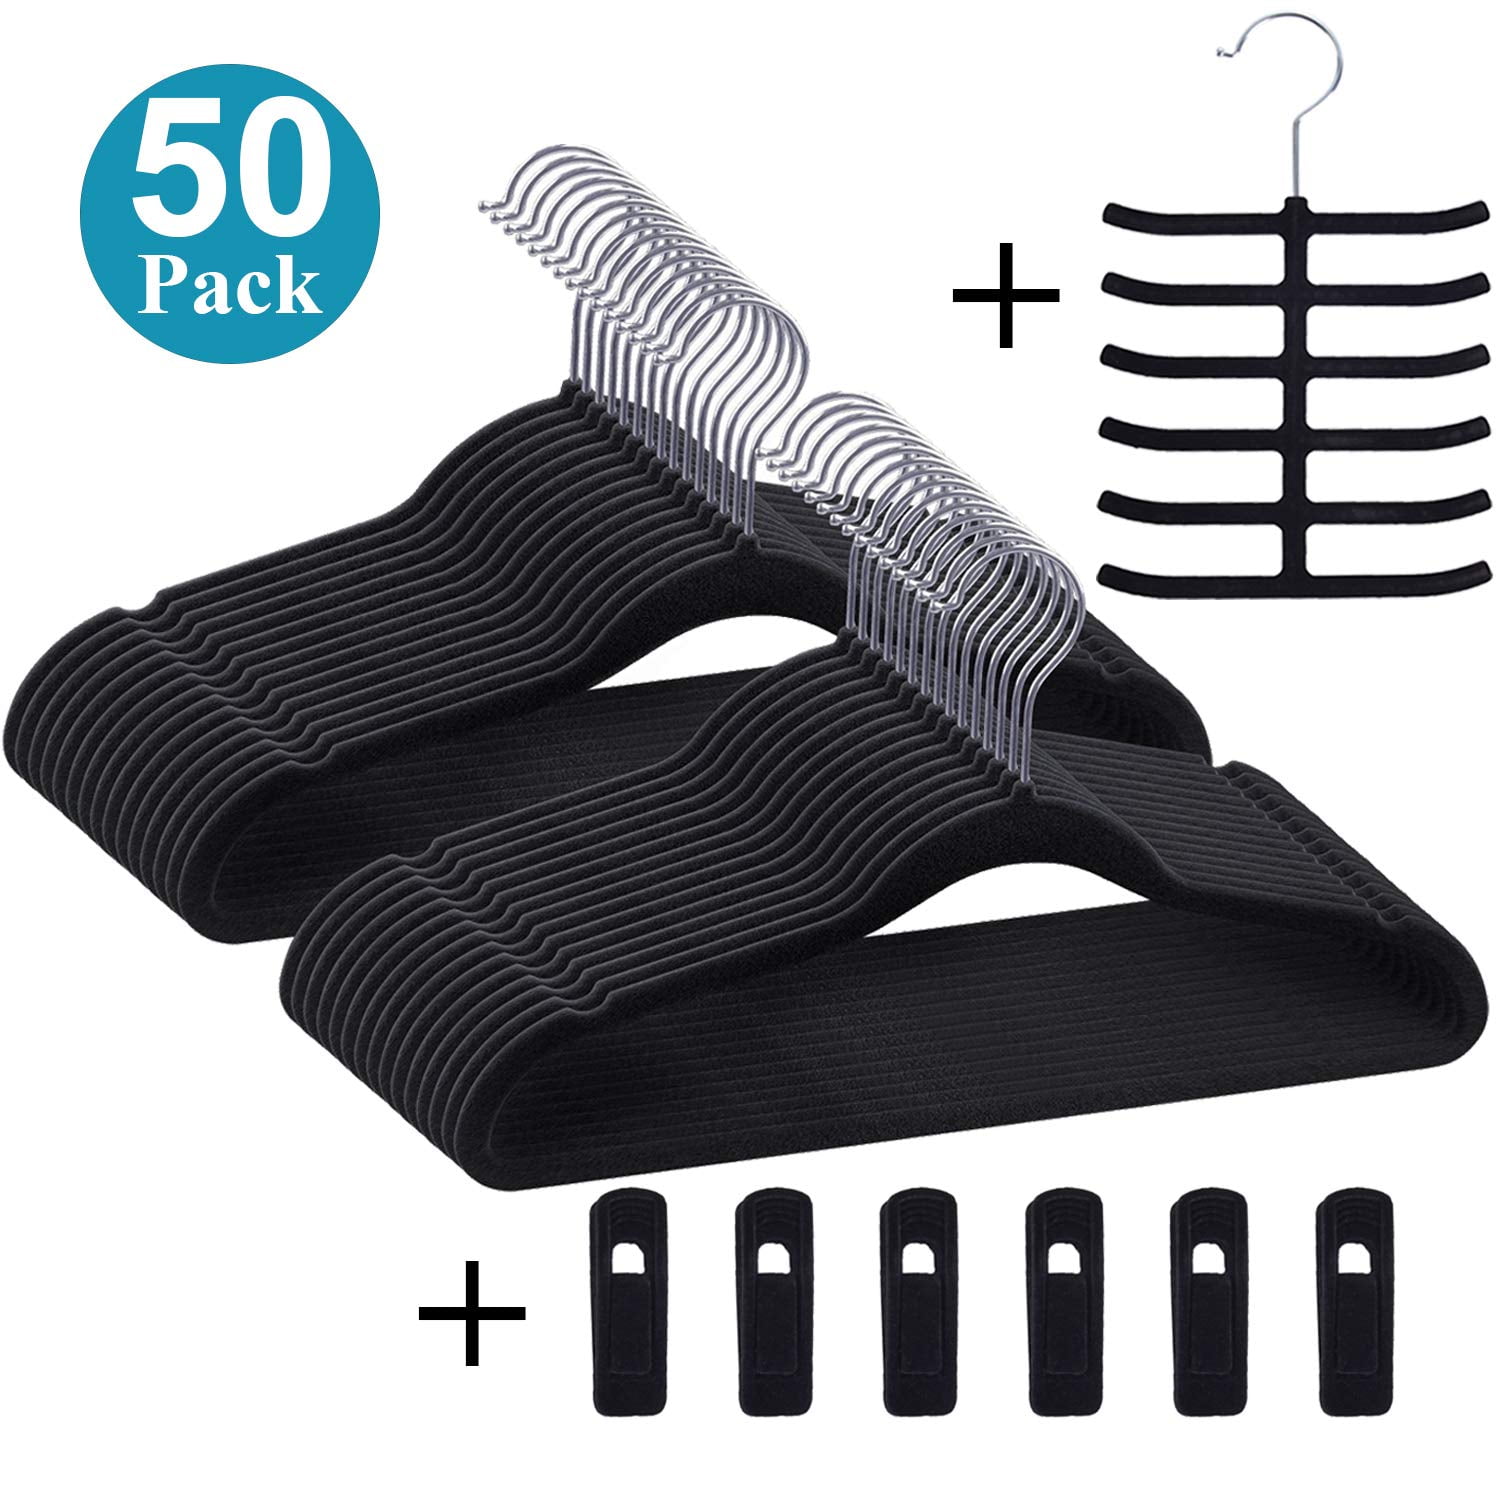  Micuul Velvet Hangers 50 Pack, Black Hangers with Tie